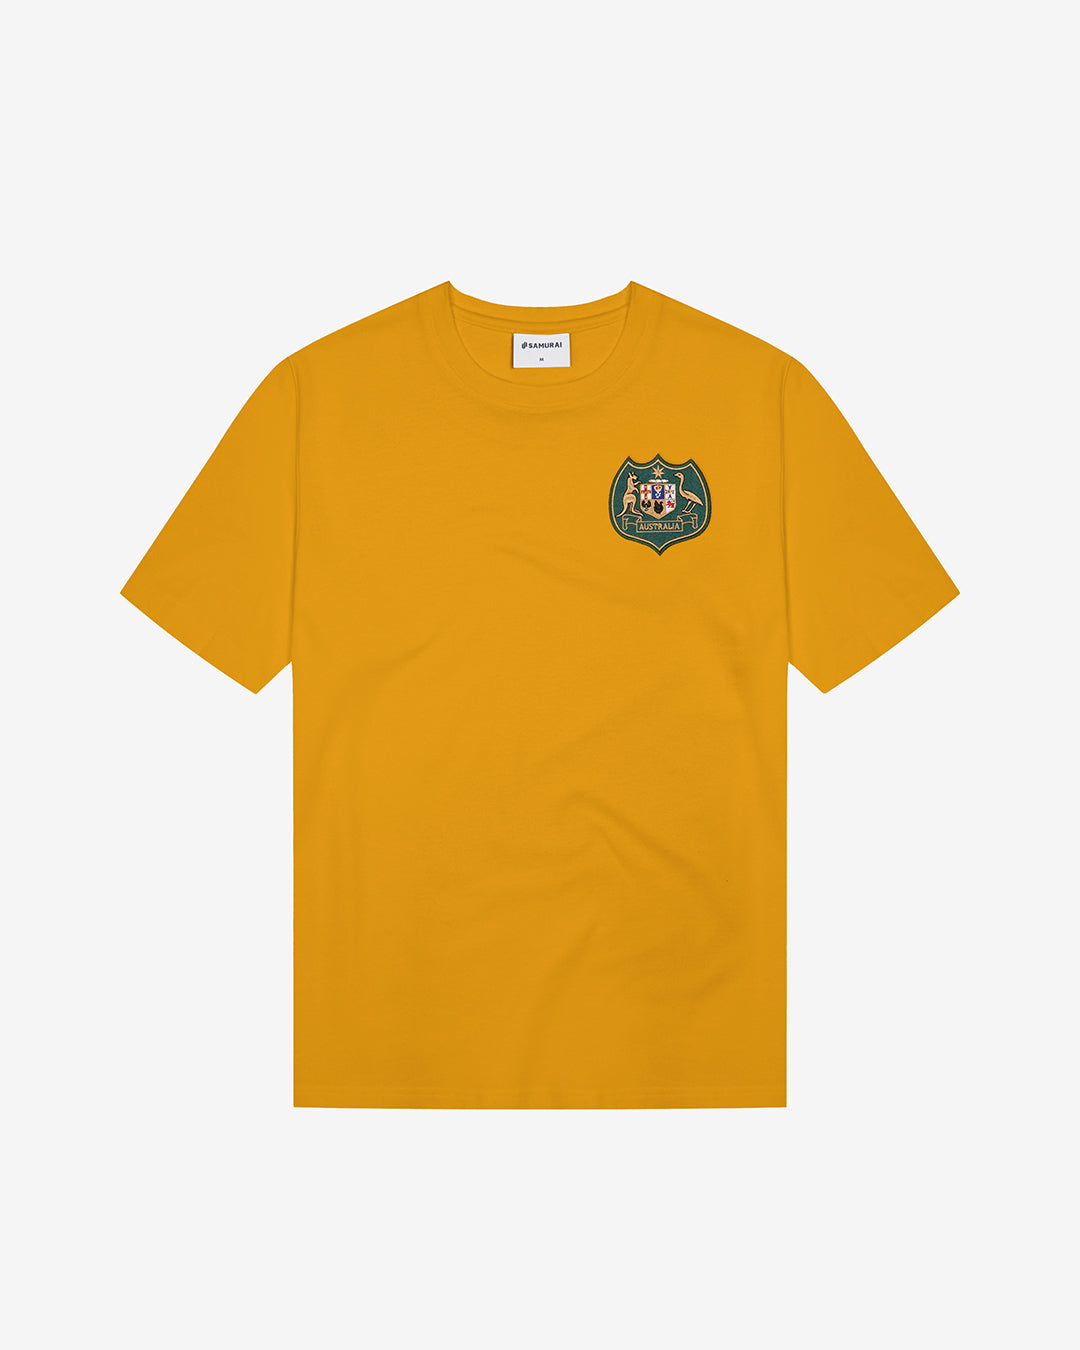 VC: AUS - Vintage T-Shirt - Australia